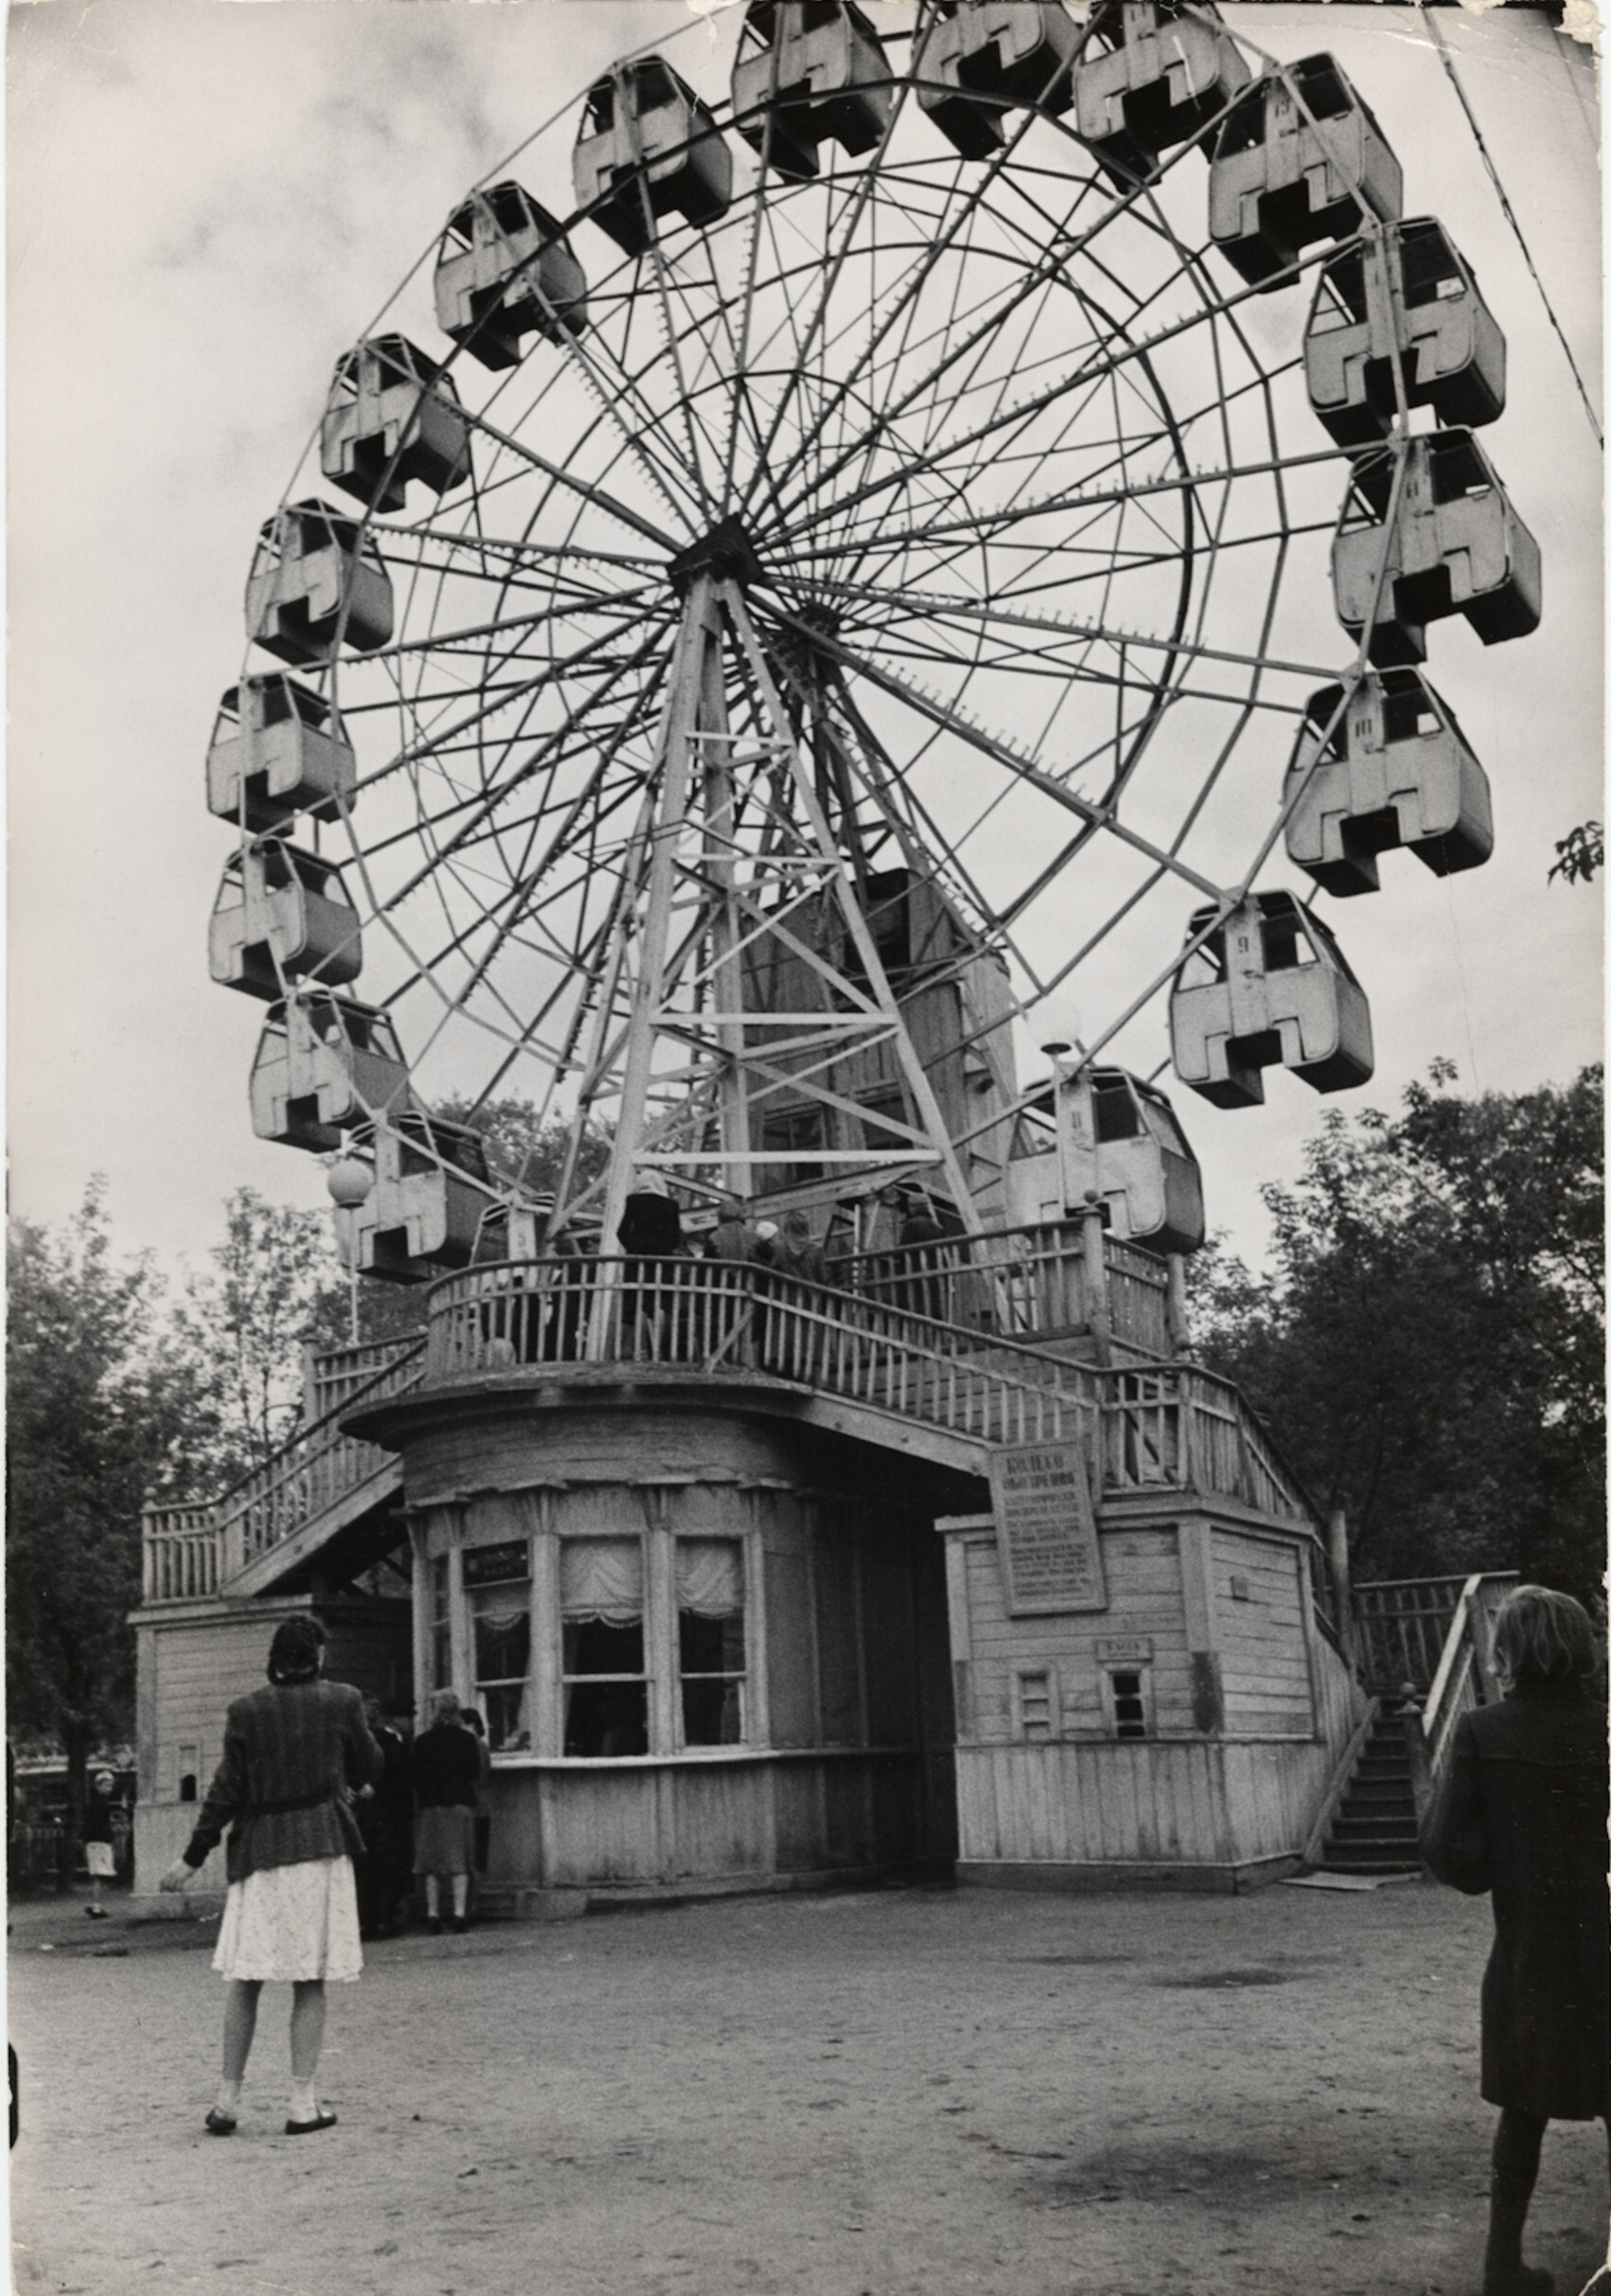 Вид на колесо обозрения в Парке культуры и отдыха имени Горького, Москва, 1947 год. Фотограф Роберт Капа